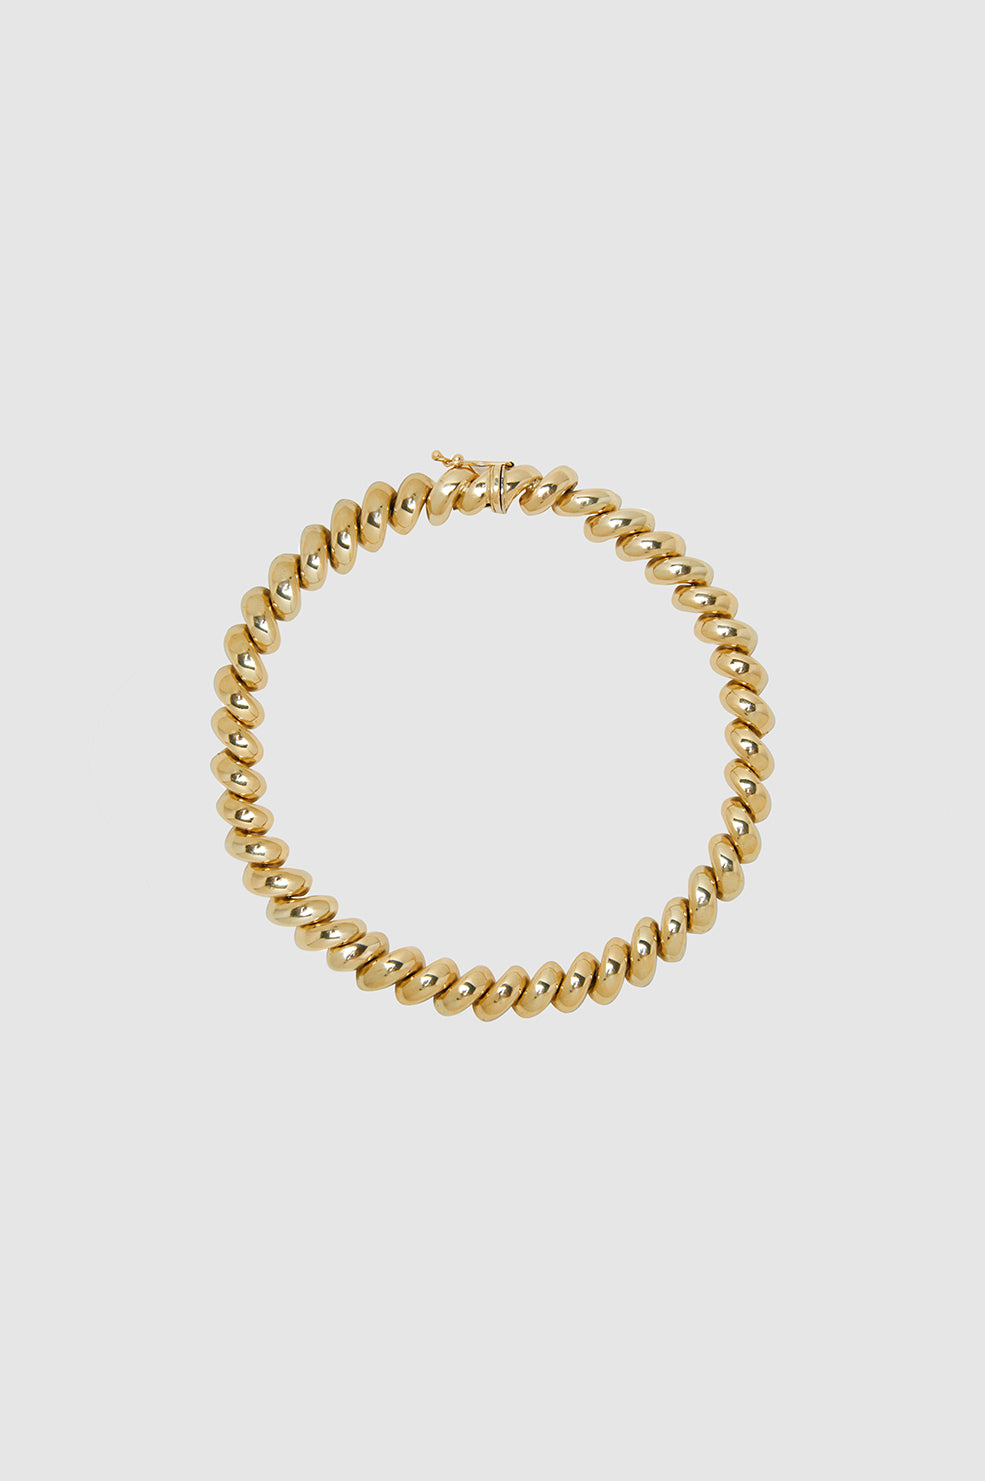 Spiral Bracelet - 14k Gold